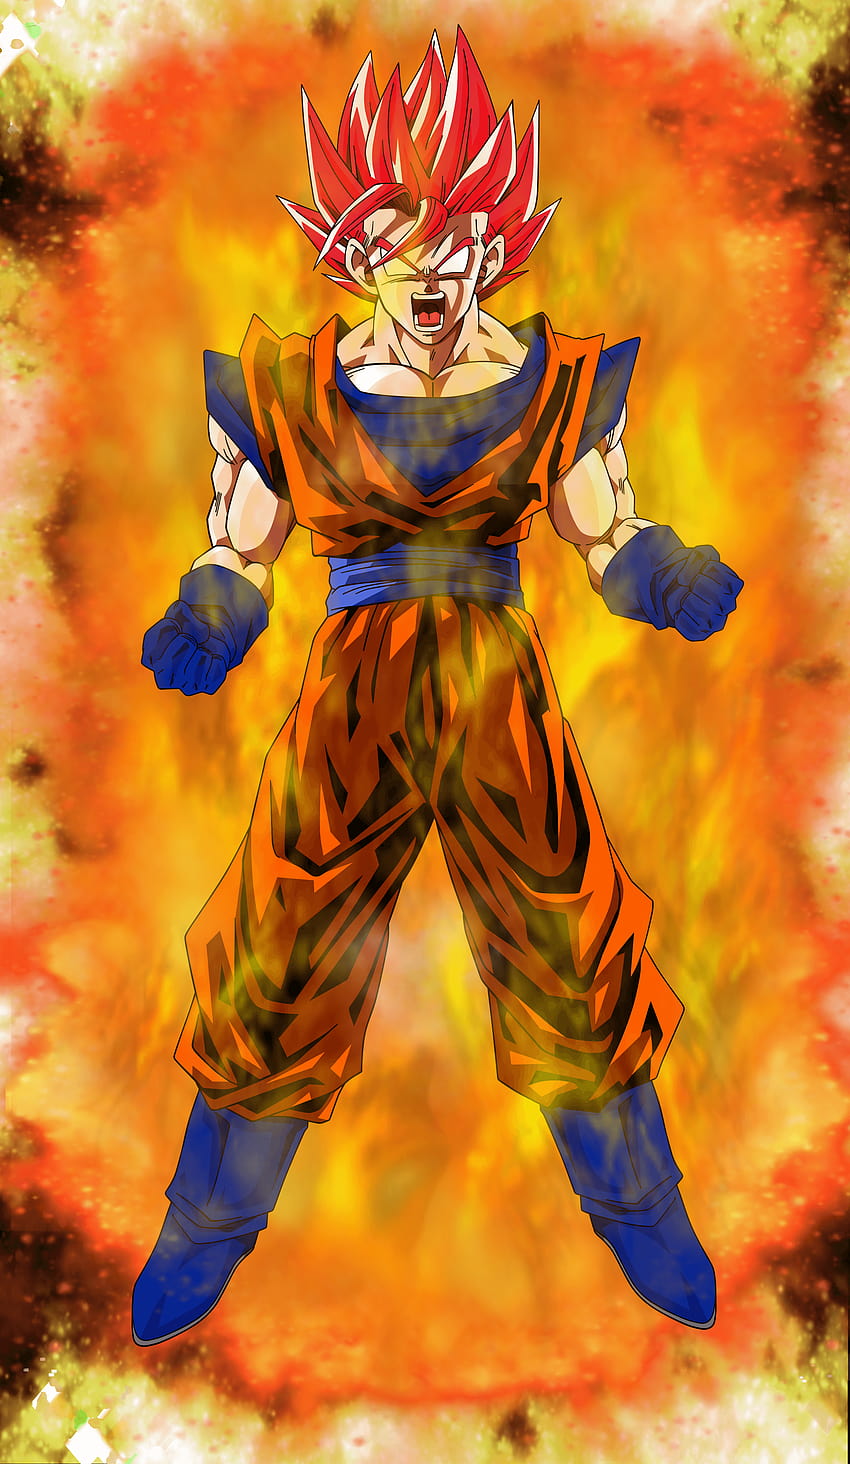 Goku God là một trong những nhân vật huyền thoại của Dragon Ball, và vẽ Goku God là một cách thể hiện sự tôn trọng của bạn đối với nhân vật này. Bạn sẽ được đắm chìm trong từng chi tiết và học hỏi kỹ thuật vẽ tranh để tạo thành một câu chuyện tuyệt vời về Goku.